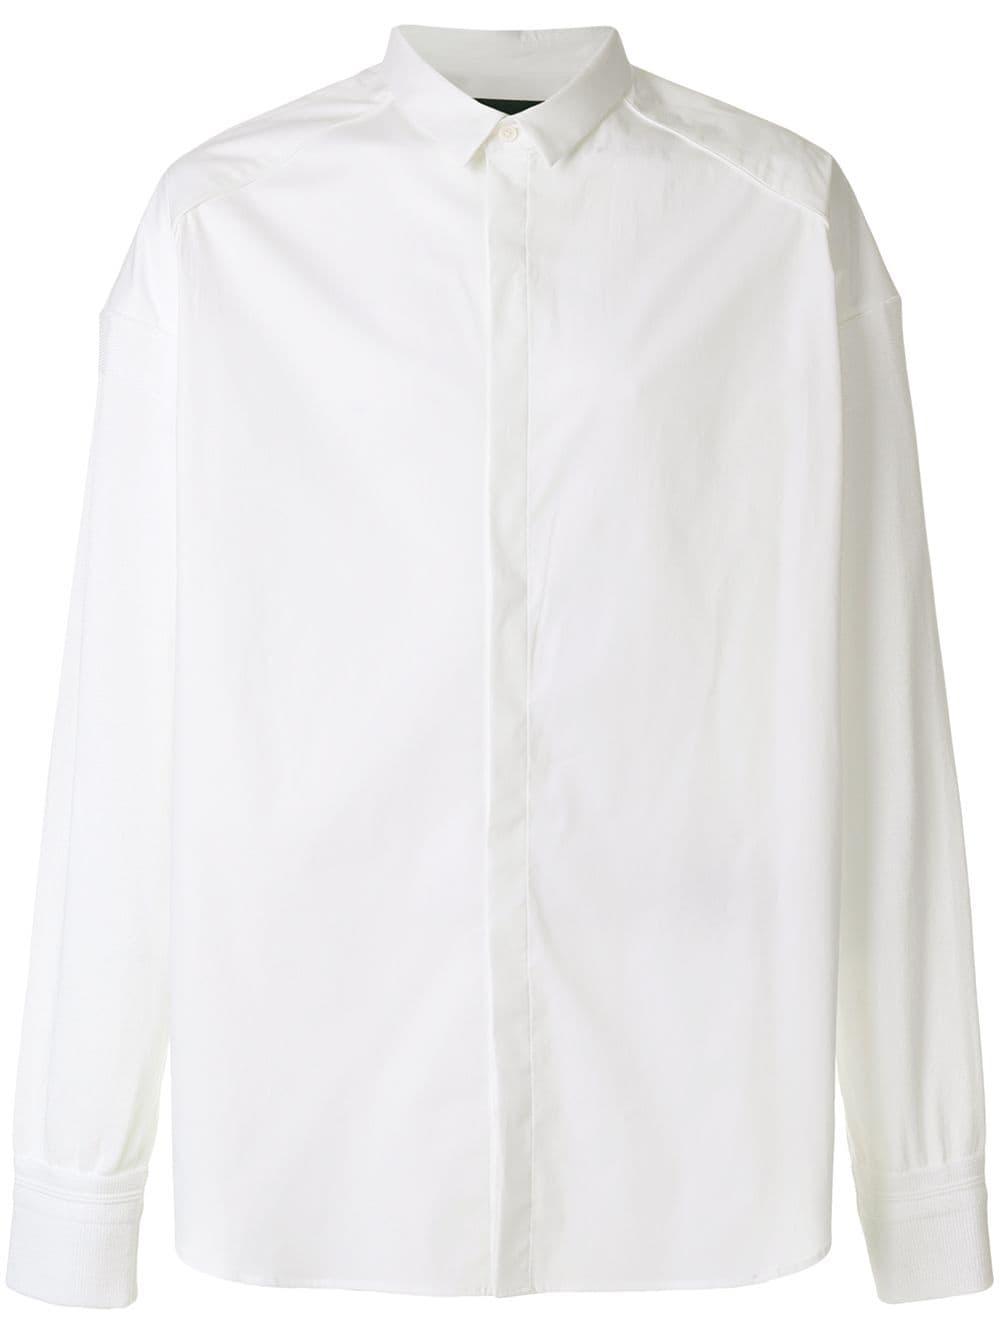 Juun.J Cotton Plain Oversized Shirt in White for Men - Lyst